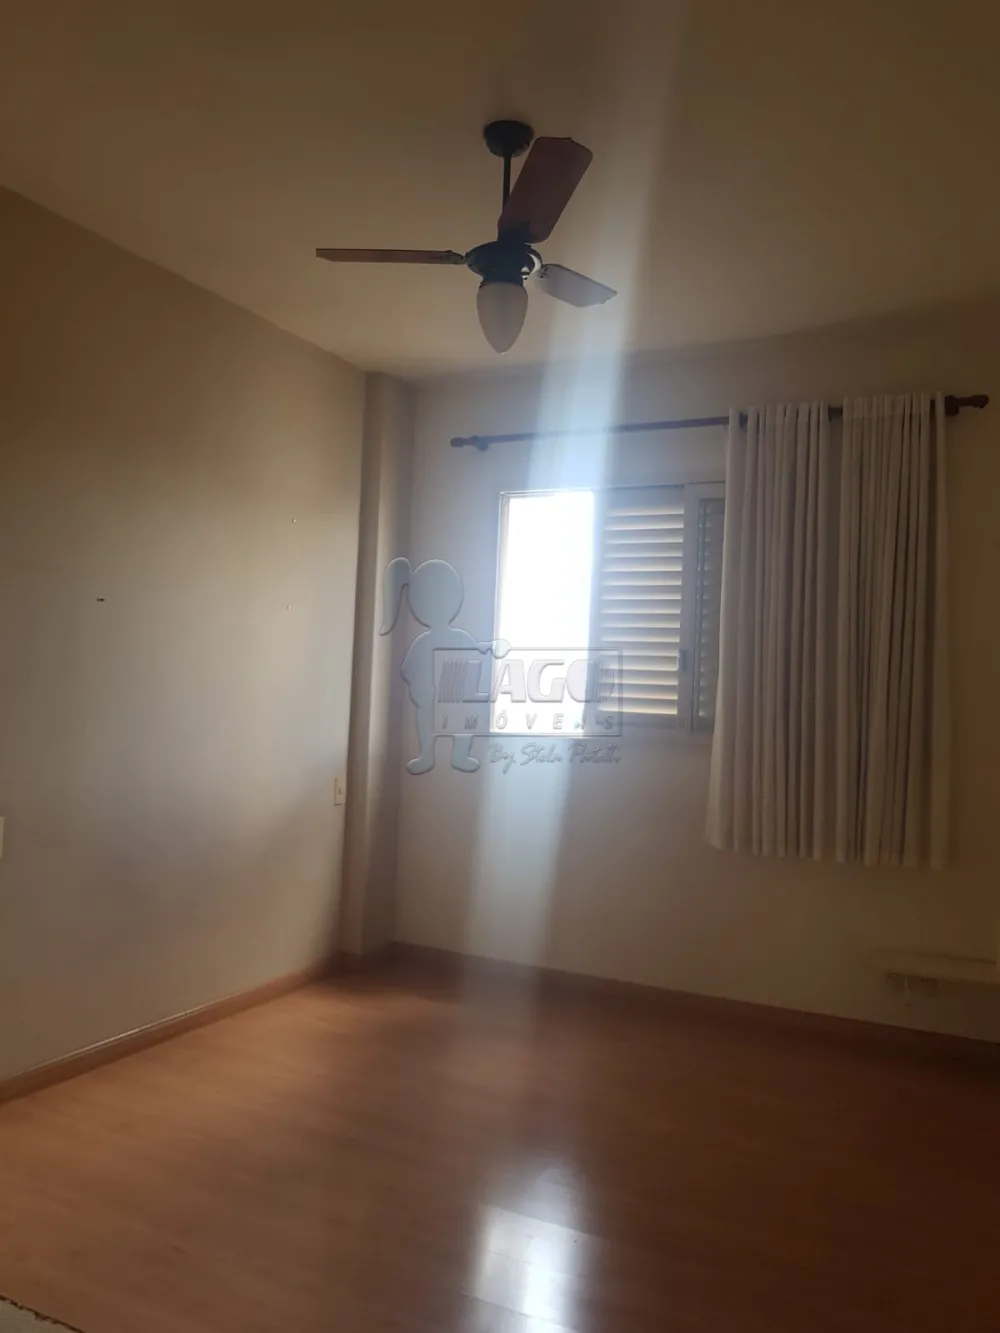 Comprar Apartamentos / Padrão em Ribeirão Preto R$ 290.000,00 - Foto 6